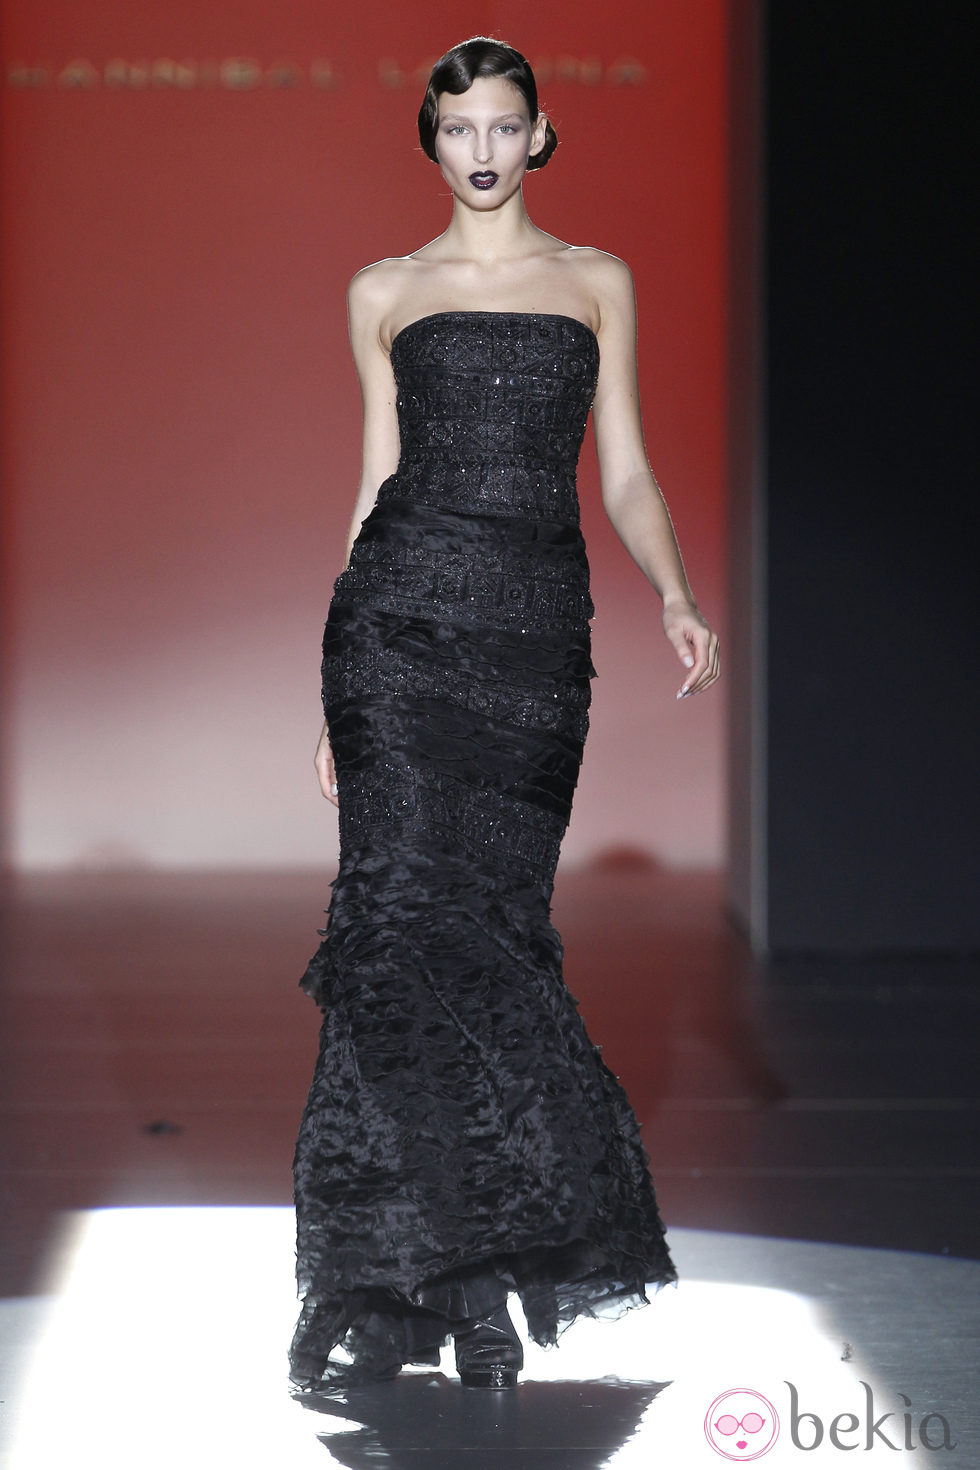 Vestido negro de corte sirena de Hannibal Laguna en Fashion Week Madrid